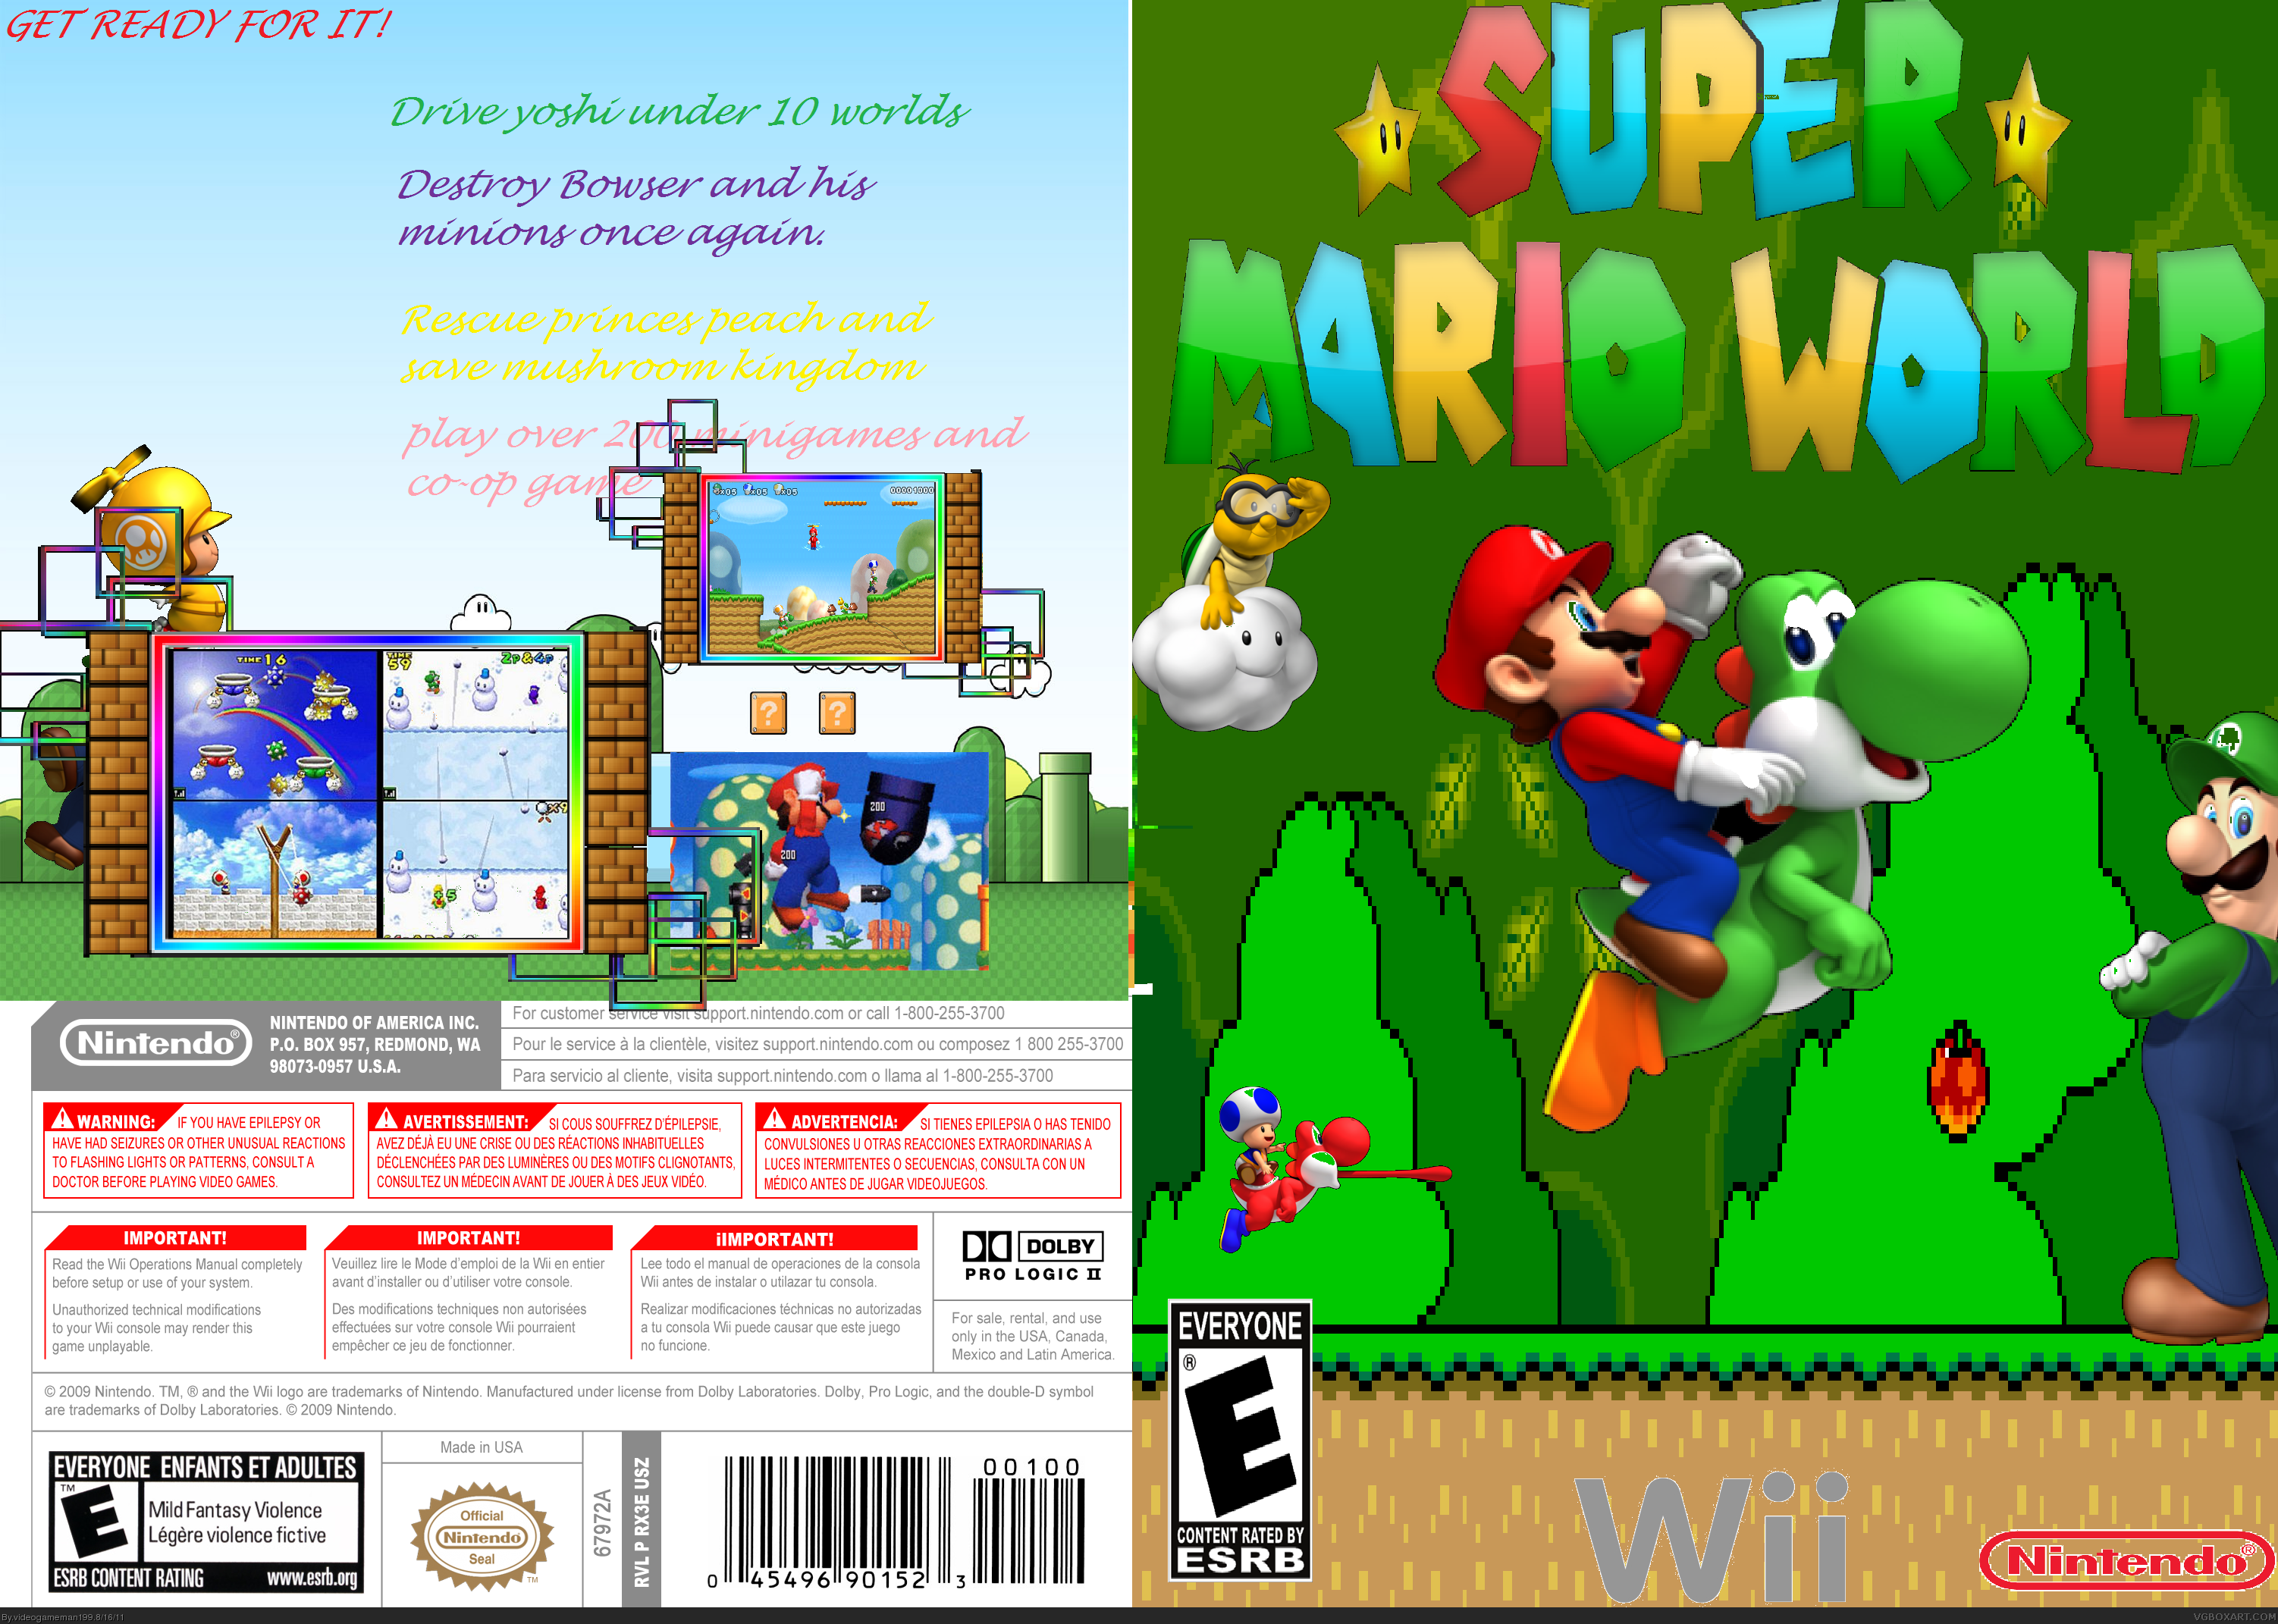 New Super Mario World box cover